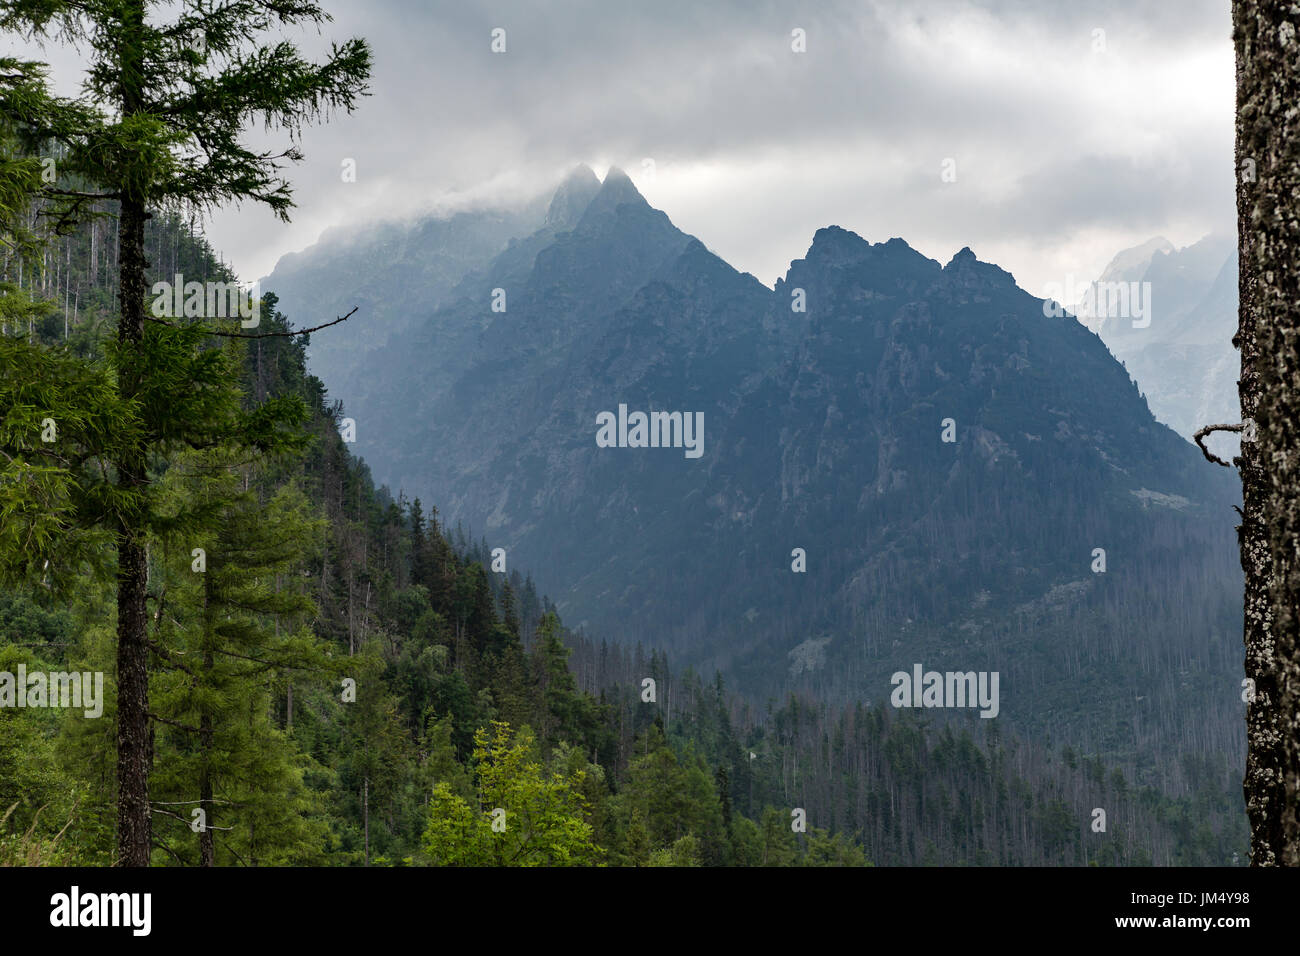 Paysage Montagnes inspirante, jour nuageux en été Tatras, de bois et de crête de montagne plus de ciel nuageux, Slovaquie Banque D'Images